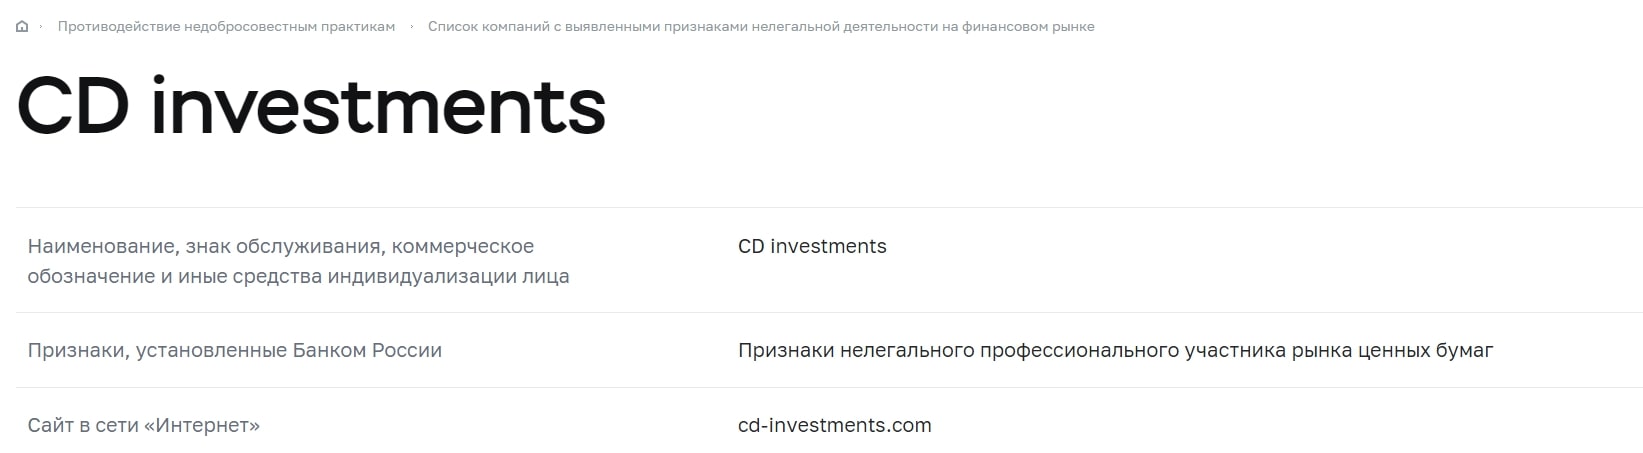 CD Investments отзывы клиентов